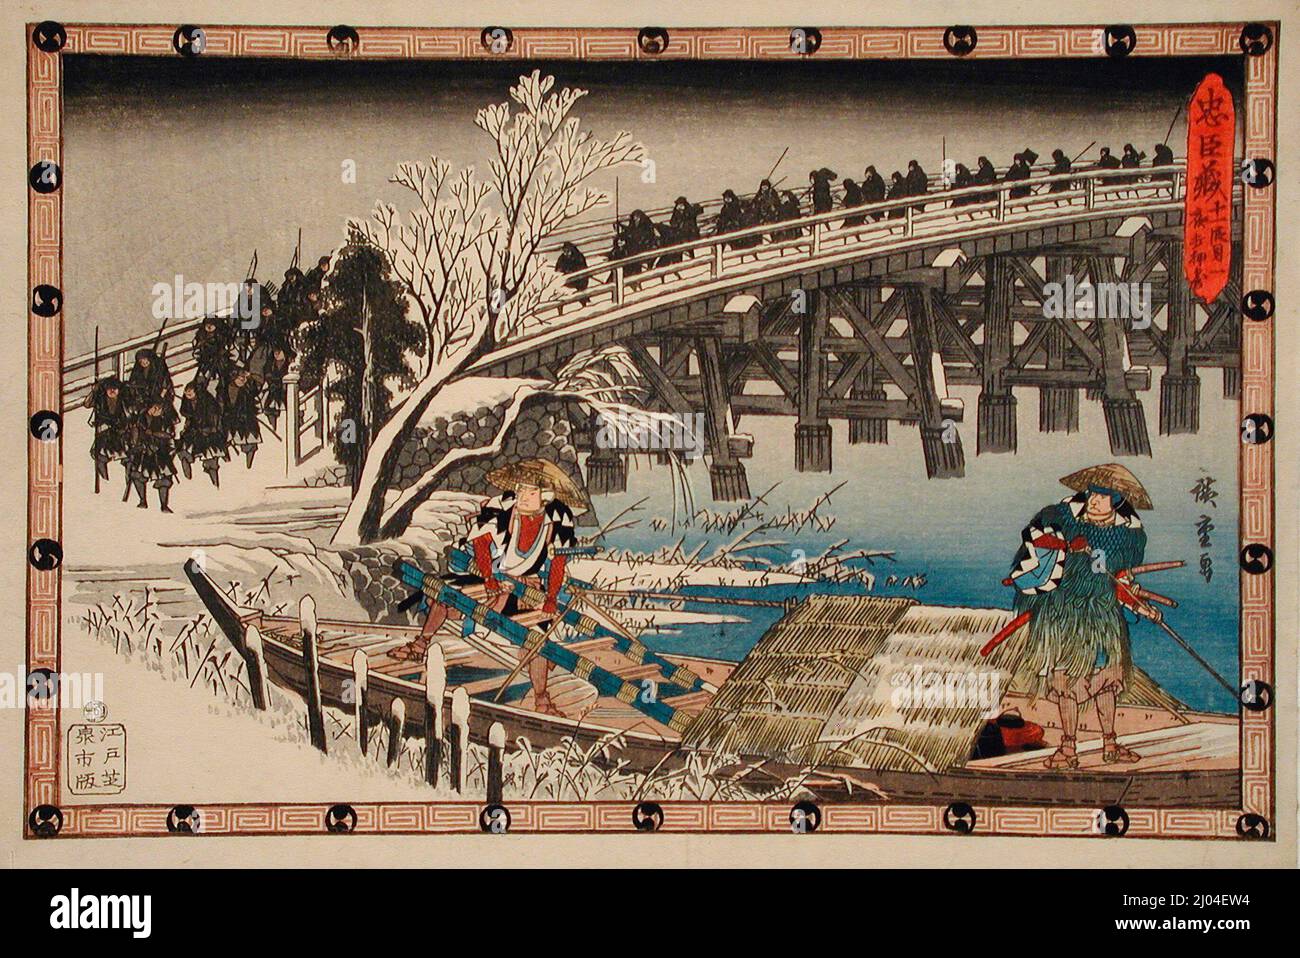 Premier épisode de l'acte XI : l'attaque de nuit avance. Utagawa Hiroshige (Japon, Edo, 1797-1858). Japon, vers 1835-1839. Imprimés; blocs de bois. Imprimé color block Banque D'Images